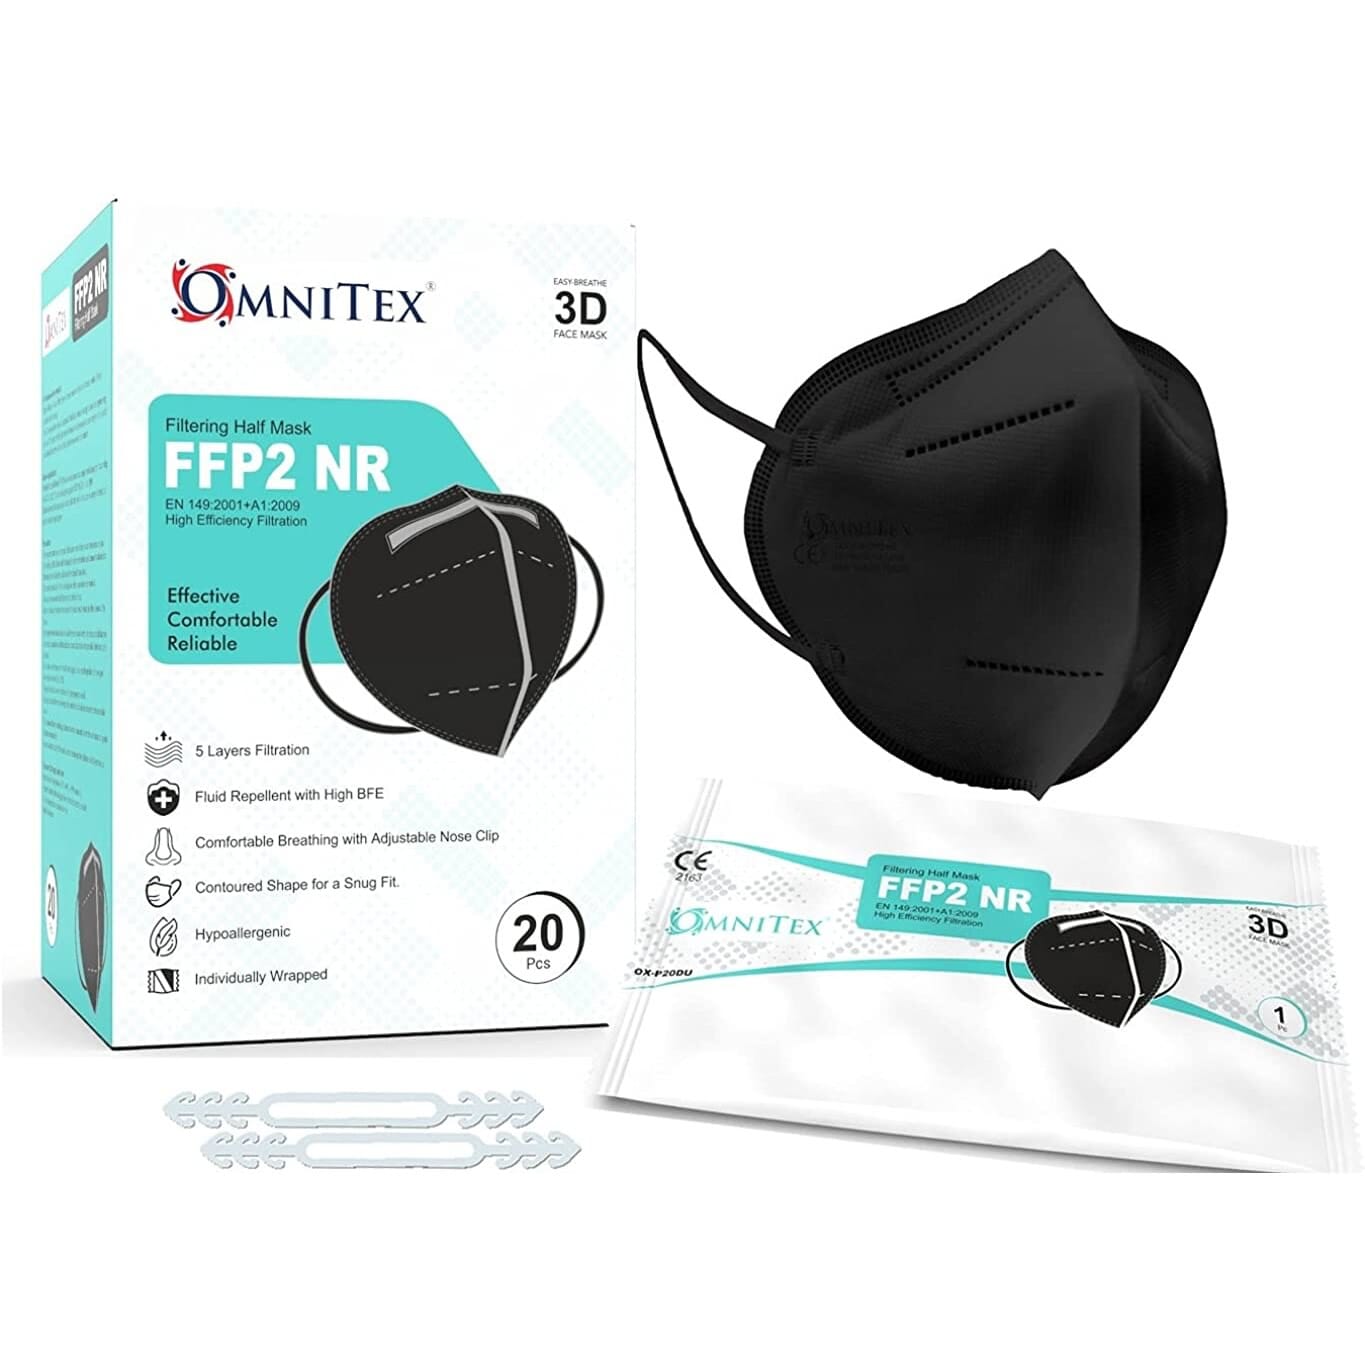 Masque respiratoire Multi FFP2 NR, kit de 10, noir, noir-01926002-10001